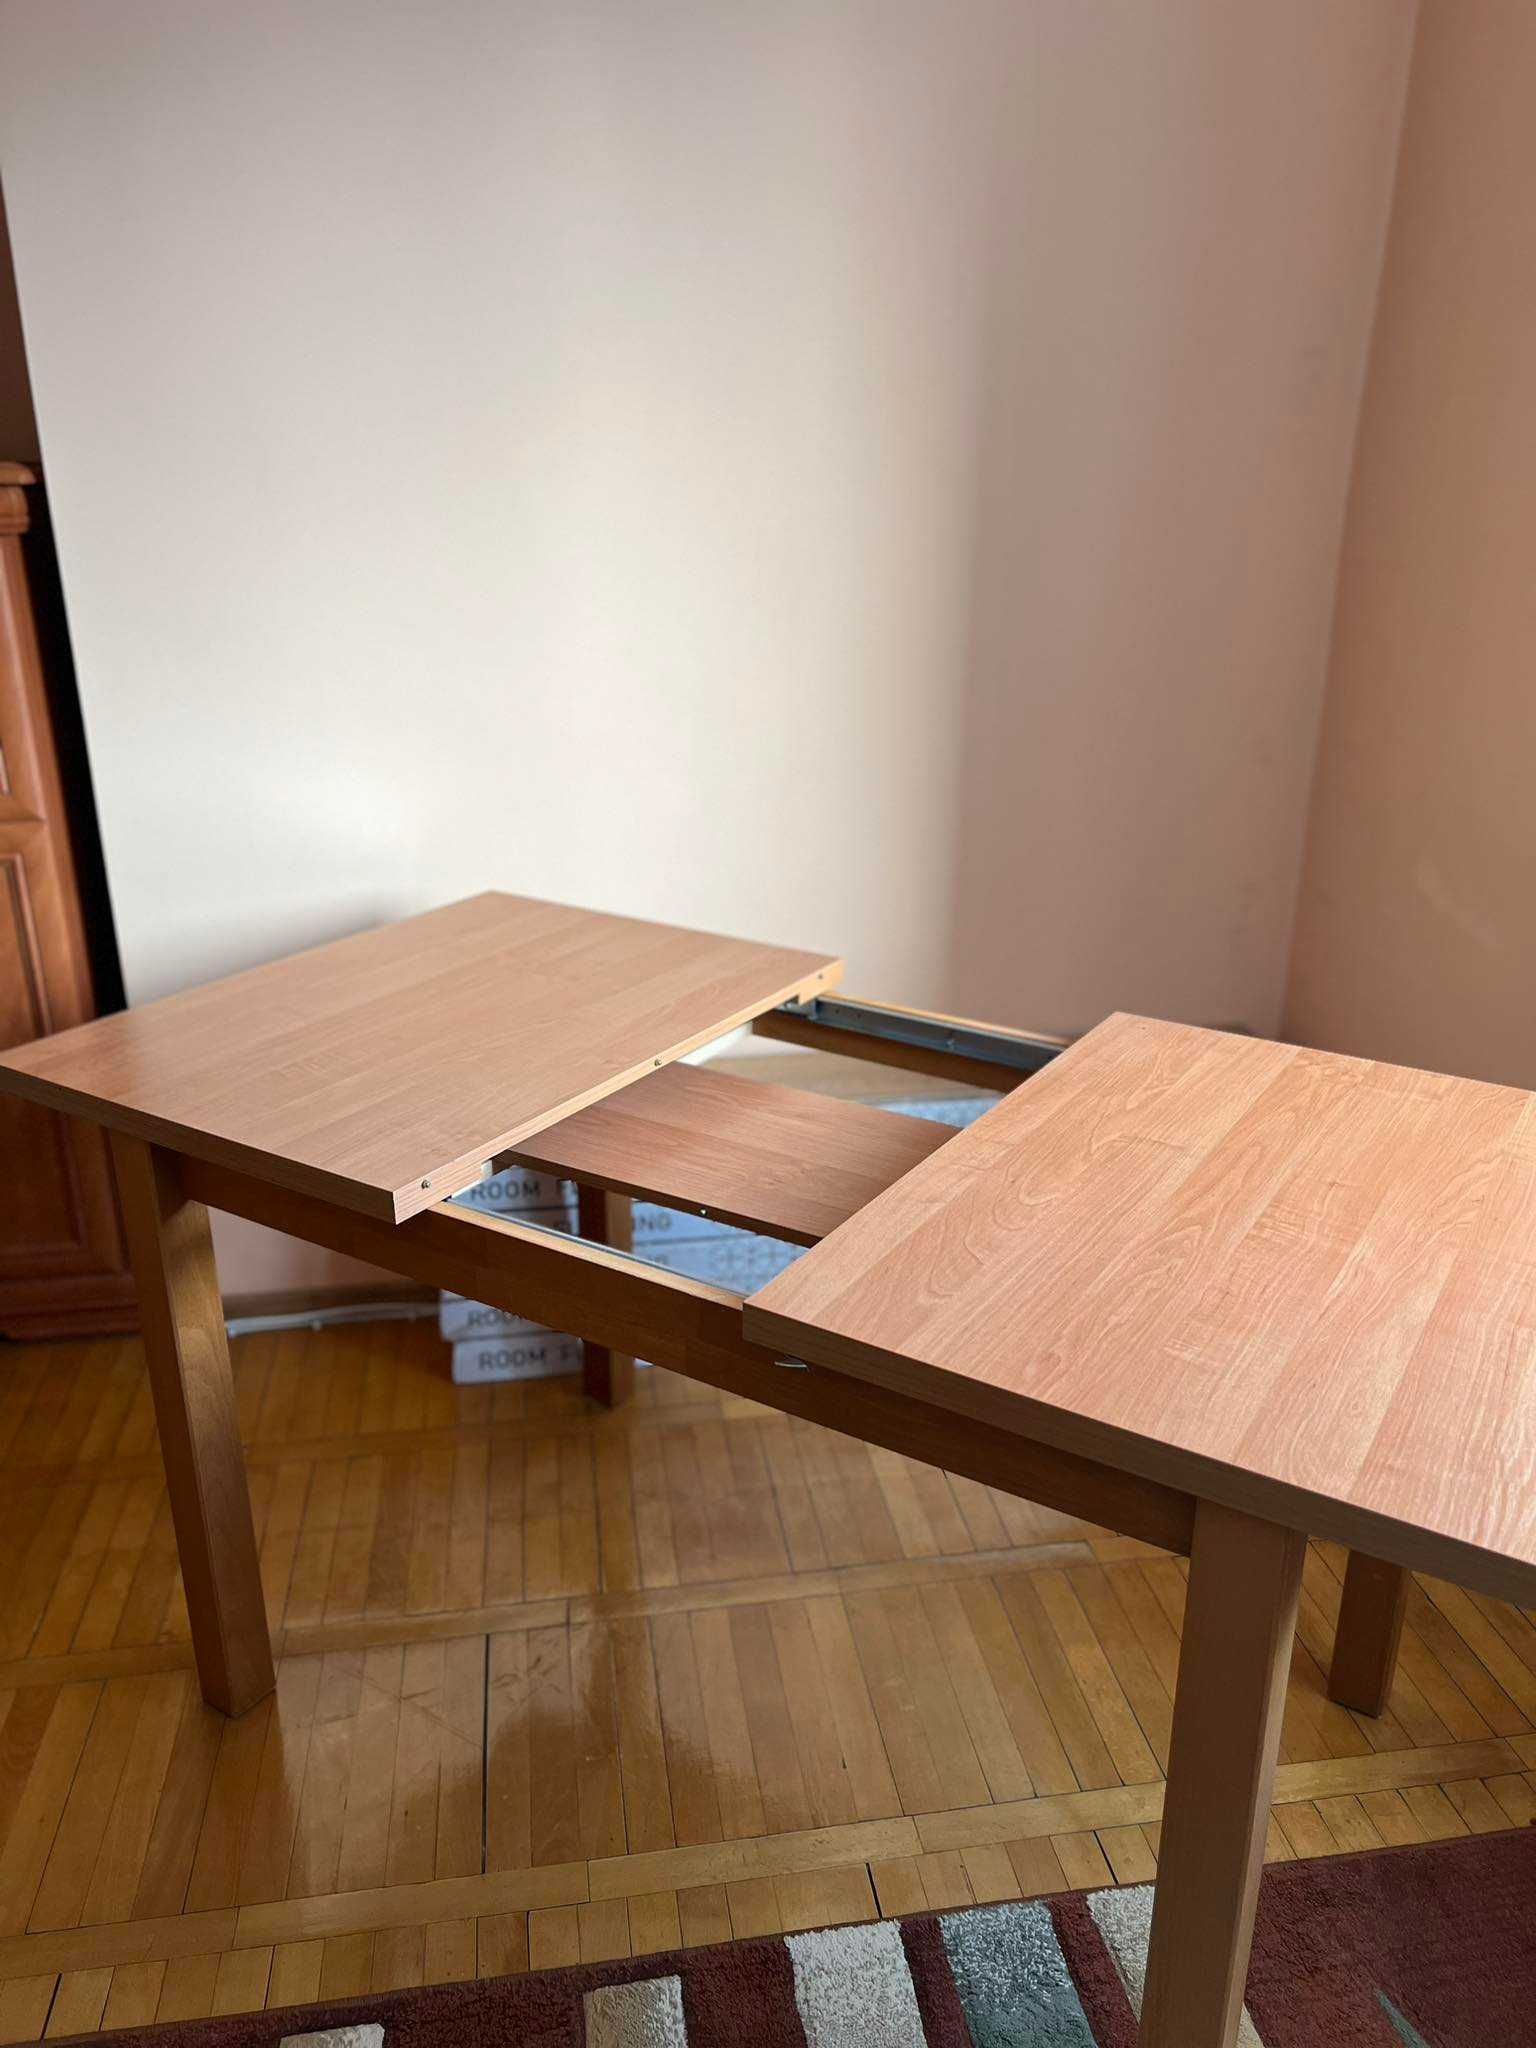 Stół do salonu, kuchni drewniany solidny bez uszkodzeń